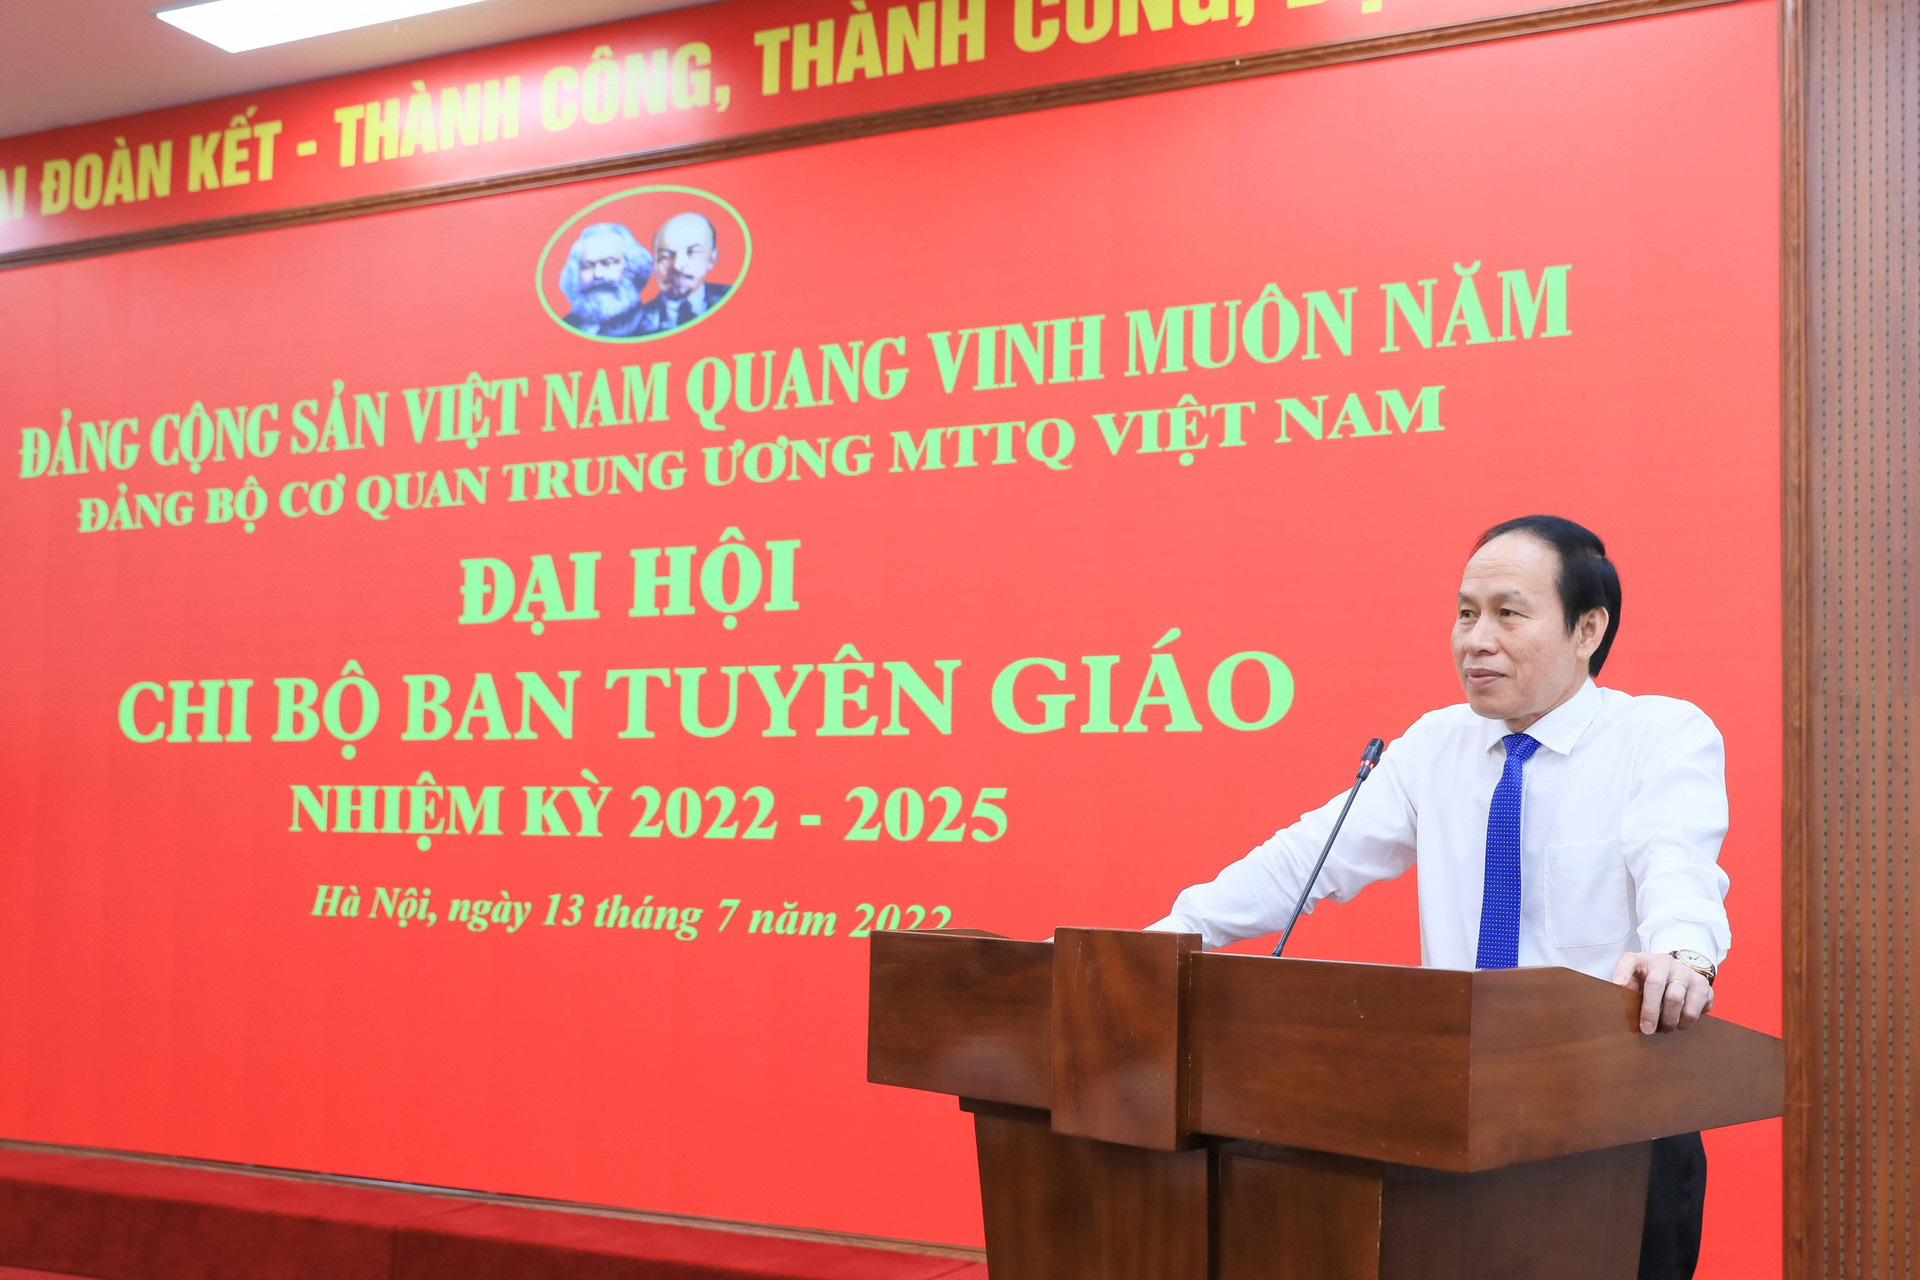 Phó Chủ tịch - Tổng Thư ký Lê Tiến Châu phát biểu tại Đại hội Chi bộ Ban Tuyên giáo.